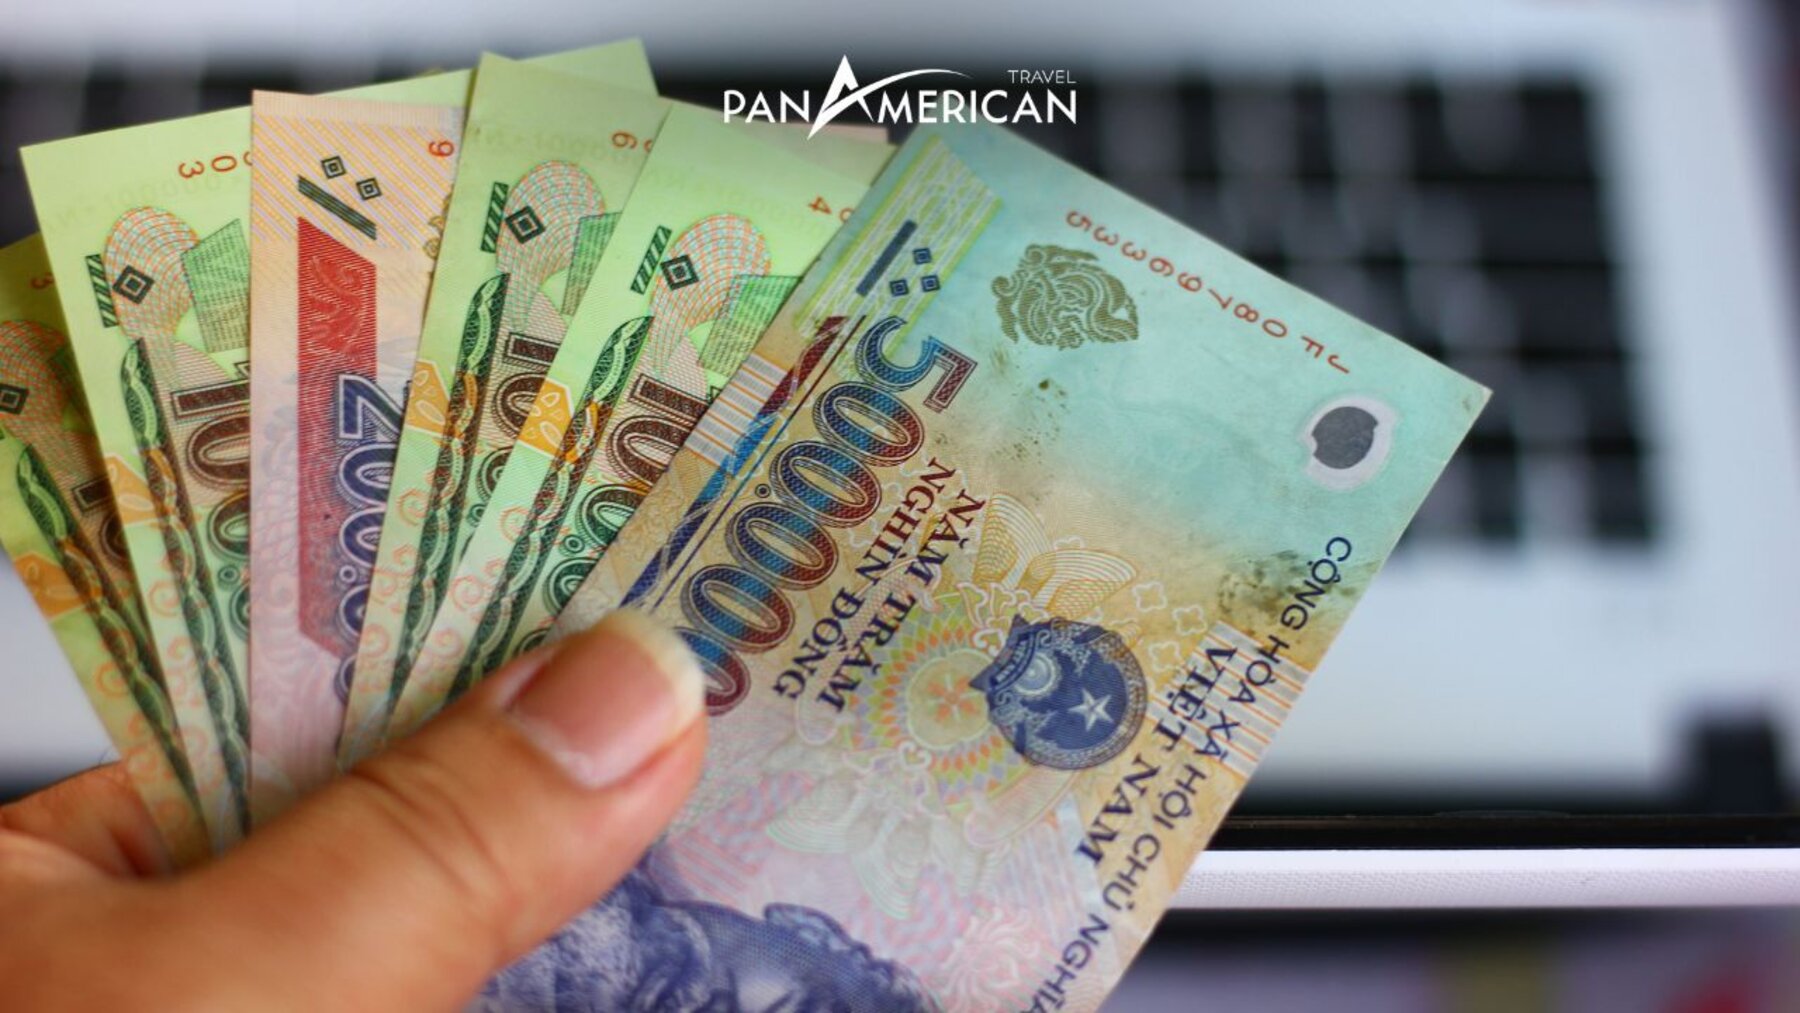 Giá trị tiền Việt Nam đứng thứ mấy trên thế giới?